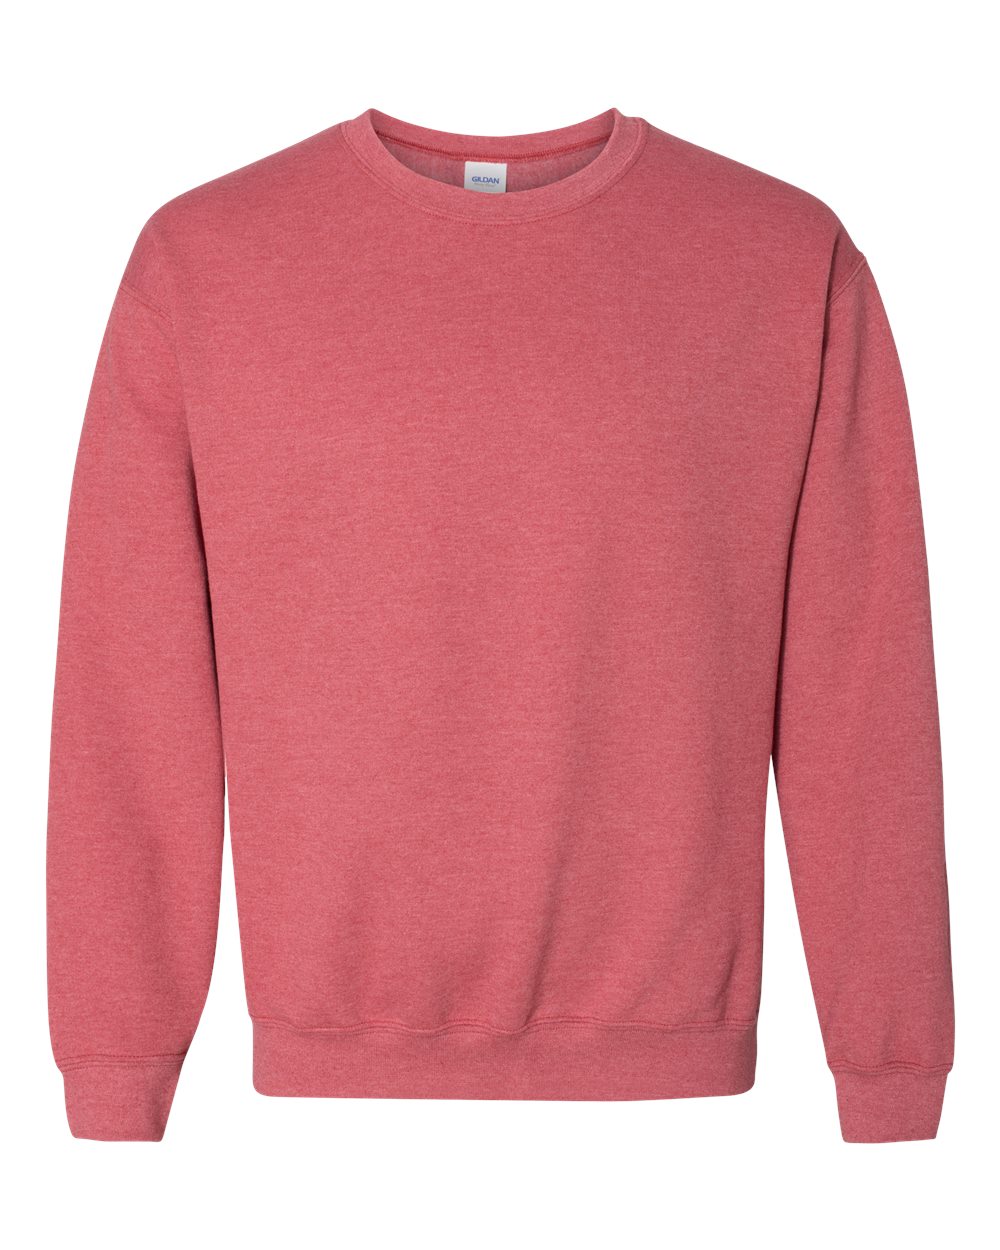 Gildan Crewneck Sweatshirt (18000) in Heather Sport Scarlet Red